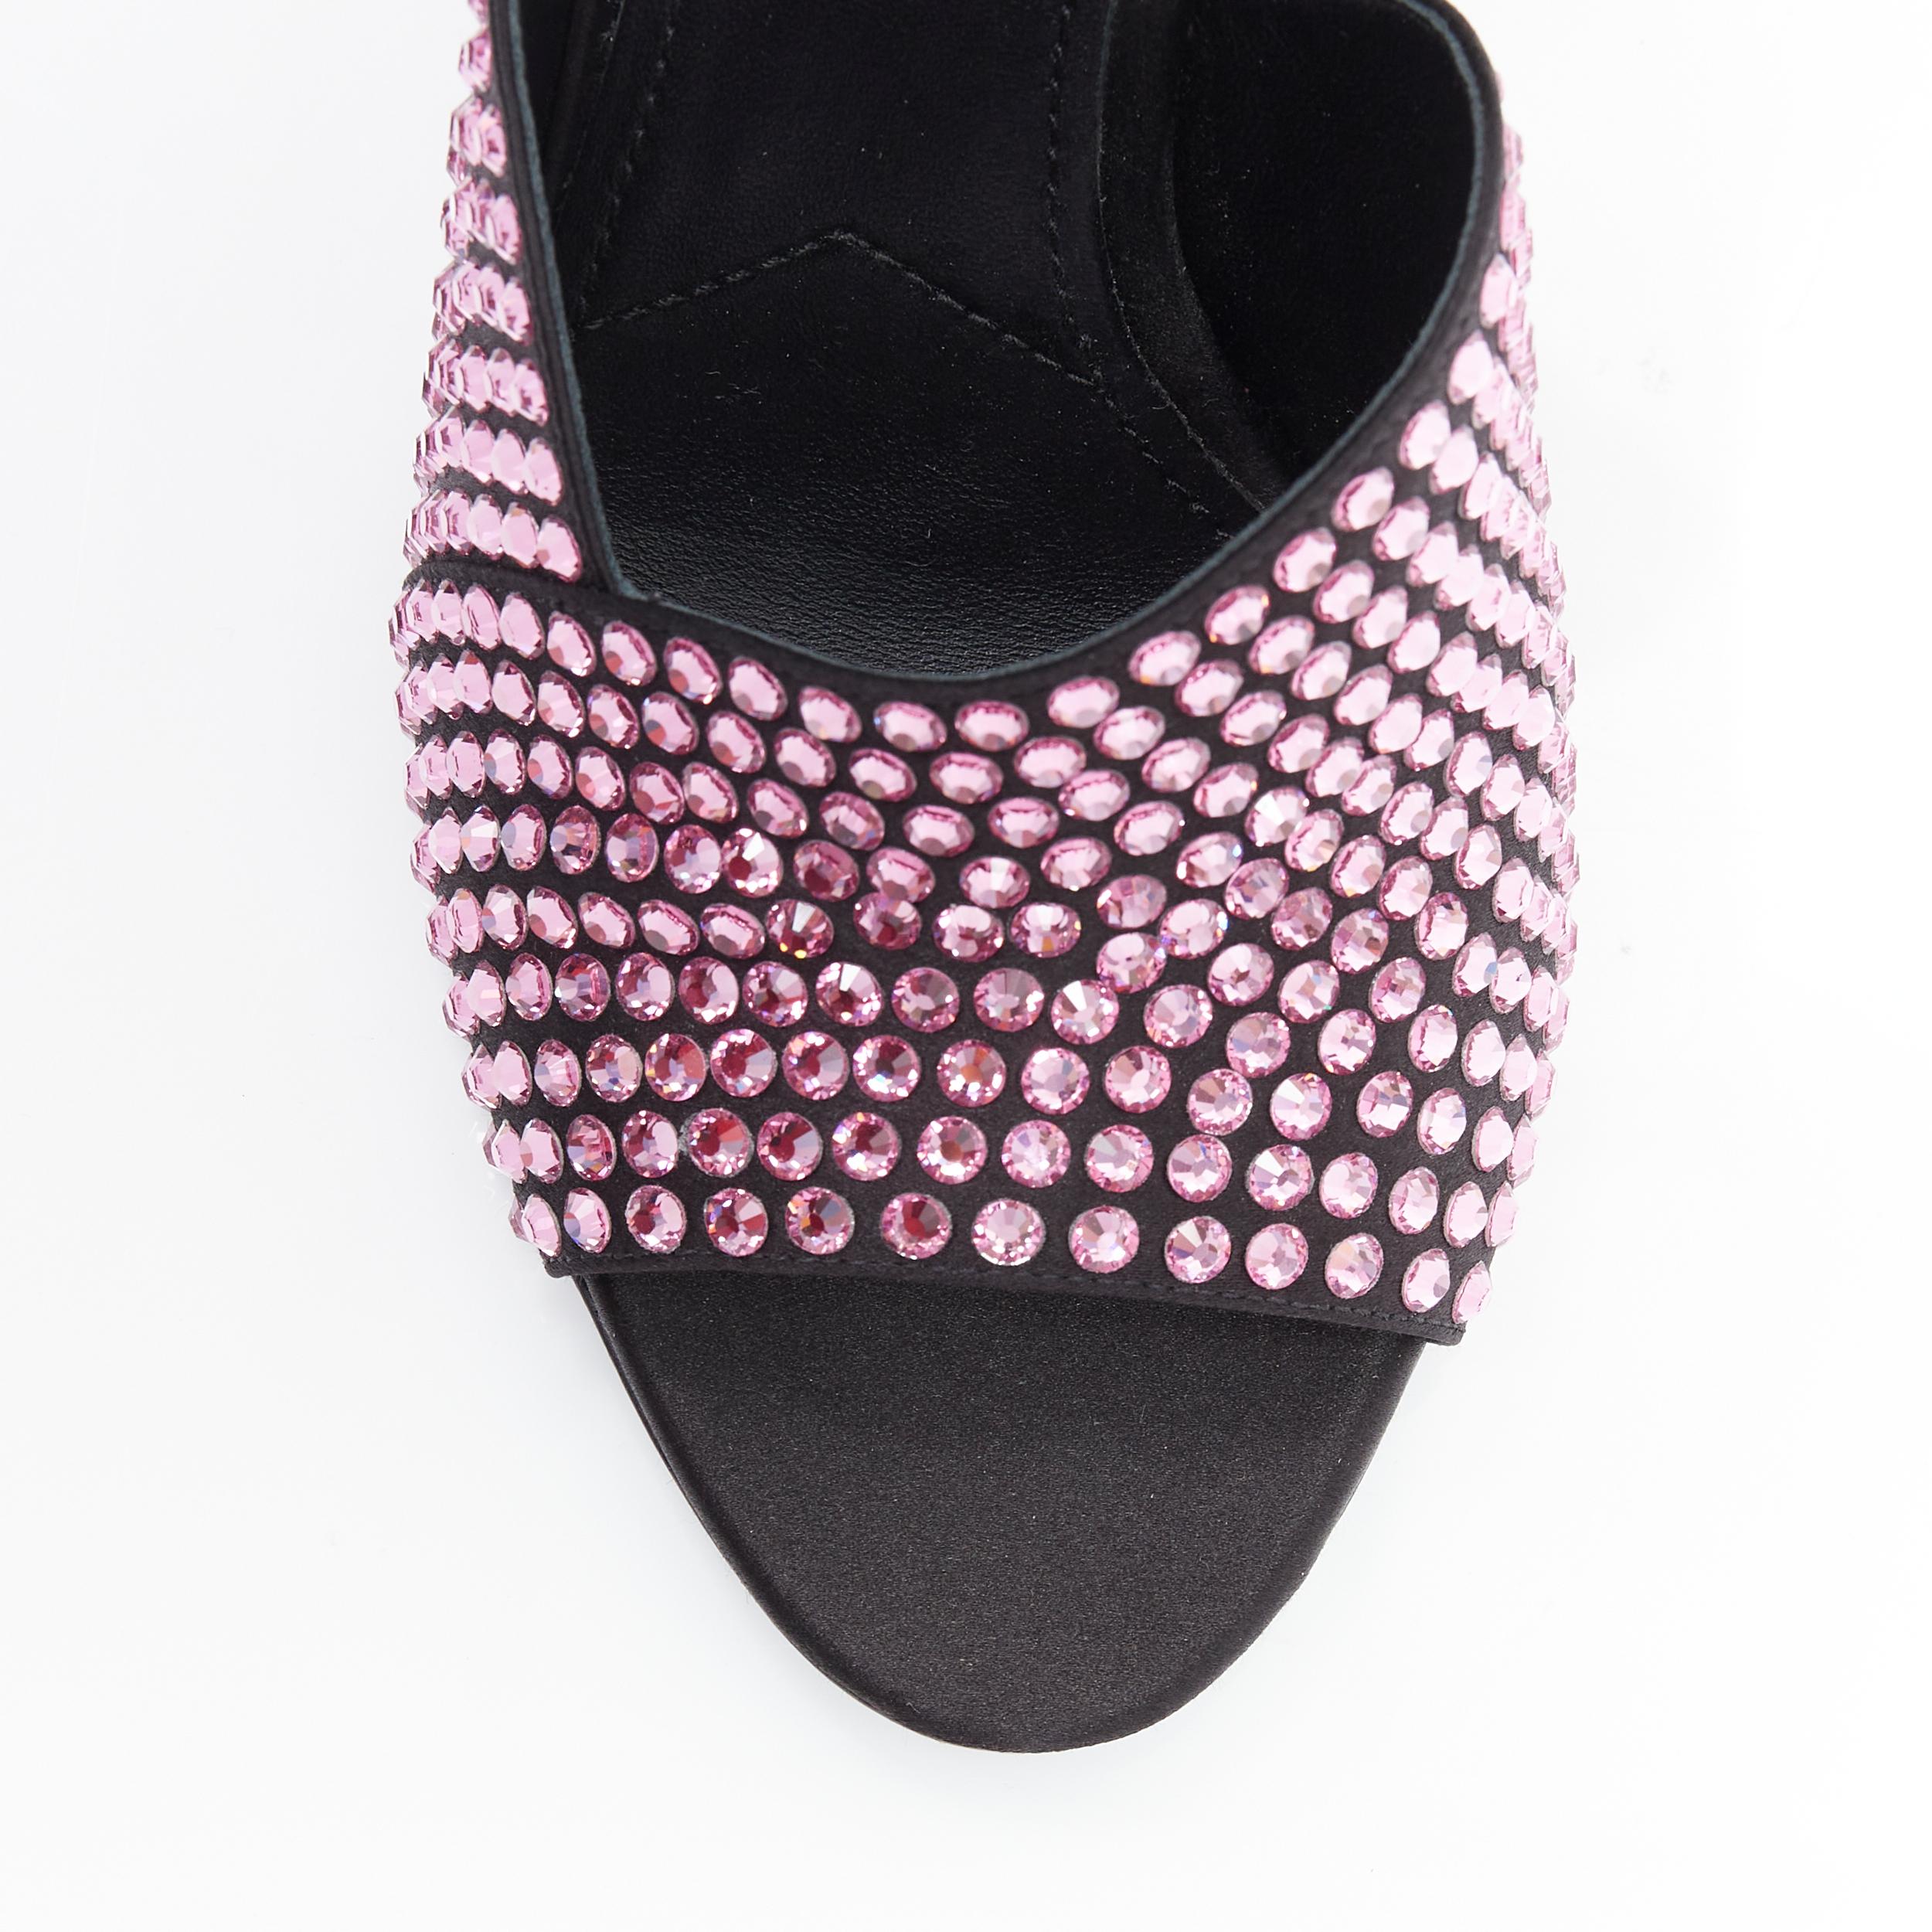 Black new PRADA 2019 Runway pink crystal rhinestone encrusted high heel sandal EU38